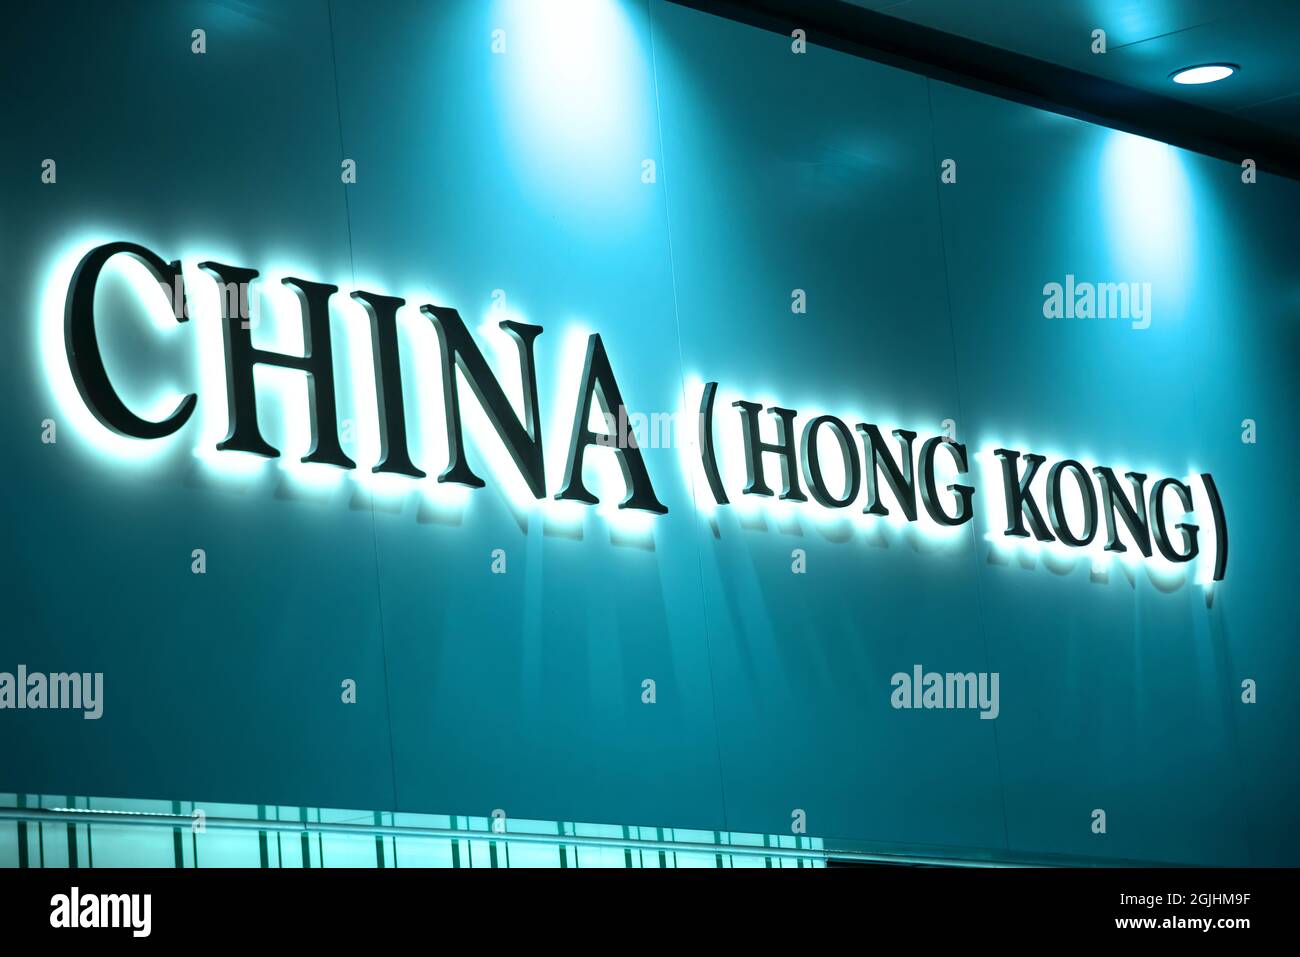 Hong Kong, China Stock Photo - Alamy